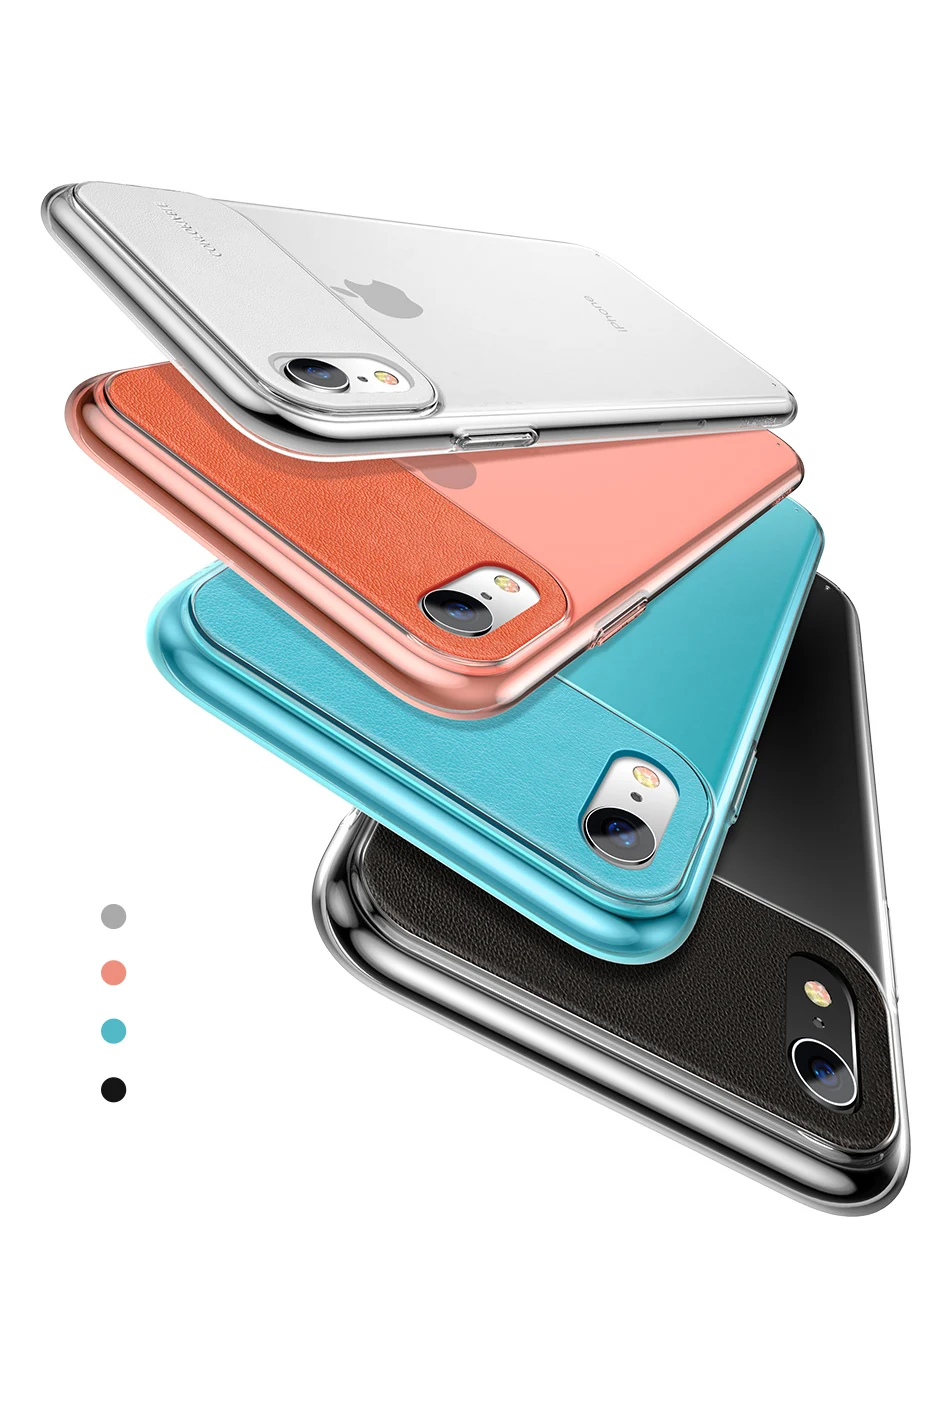 Чехол для телефона Baseus для iPhone Xs Max, Xr, X, S, R, Xsmax, Роскошный ультра тонкий чехол из искусственной кожи, чехол-накладка для iPhone X, Max, Fundas